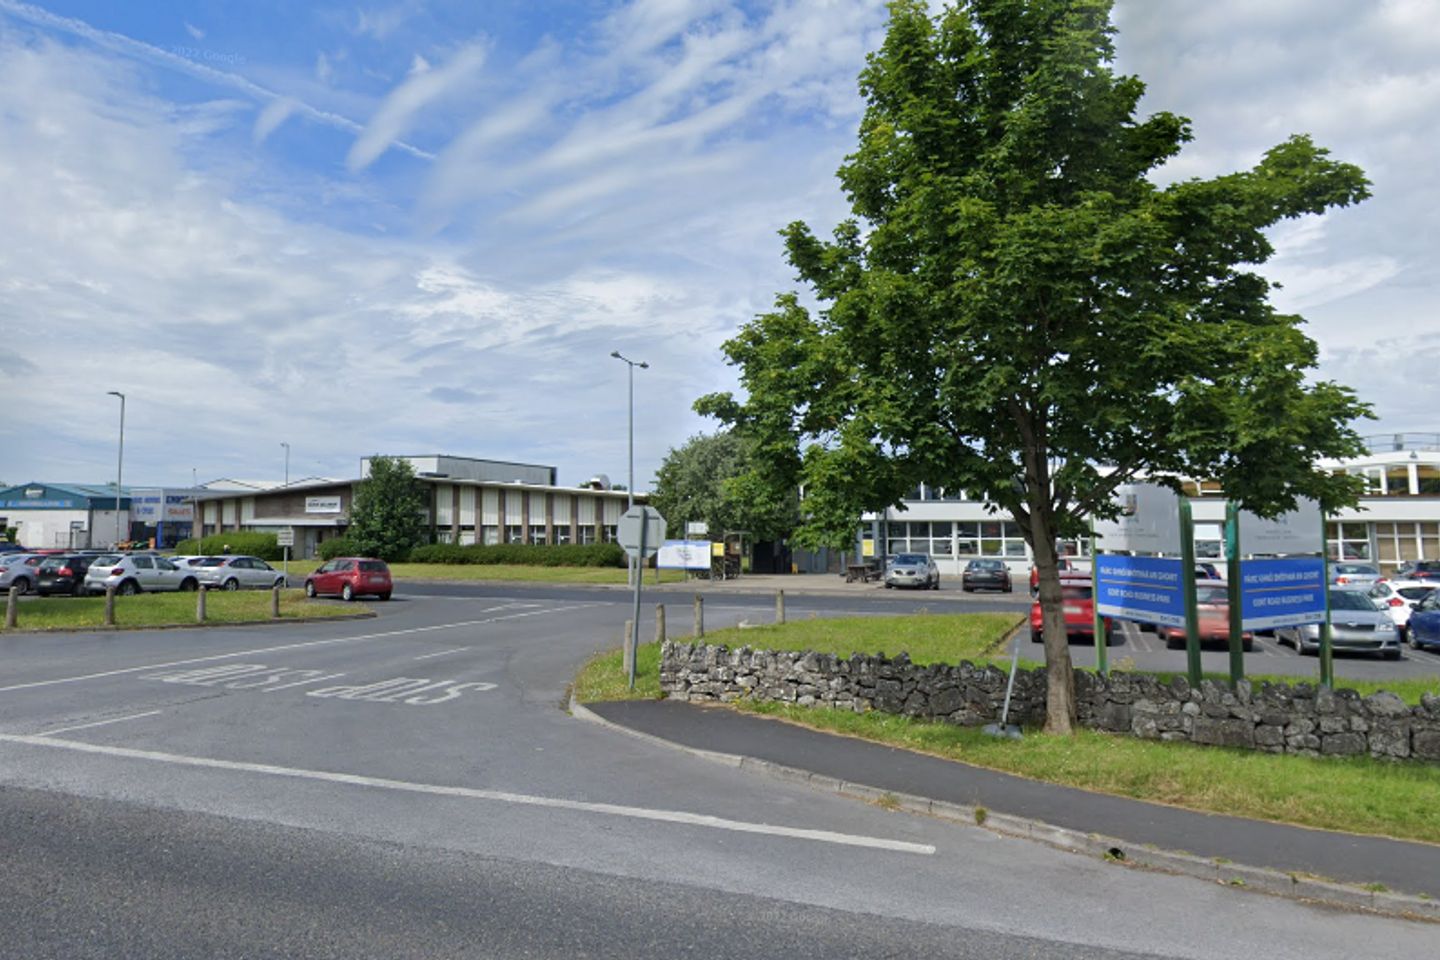 Gort Road Enterprise Centre, Ennis, Co. Clare